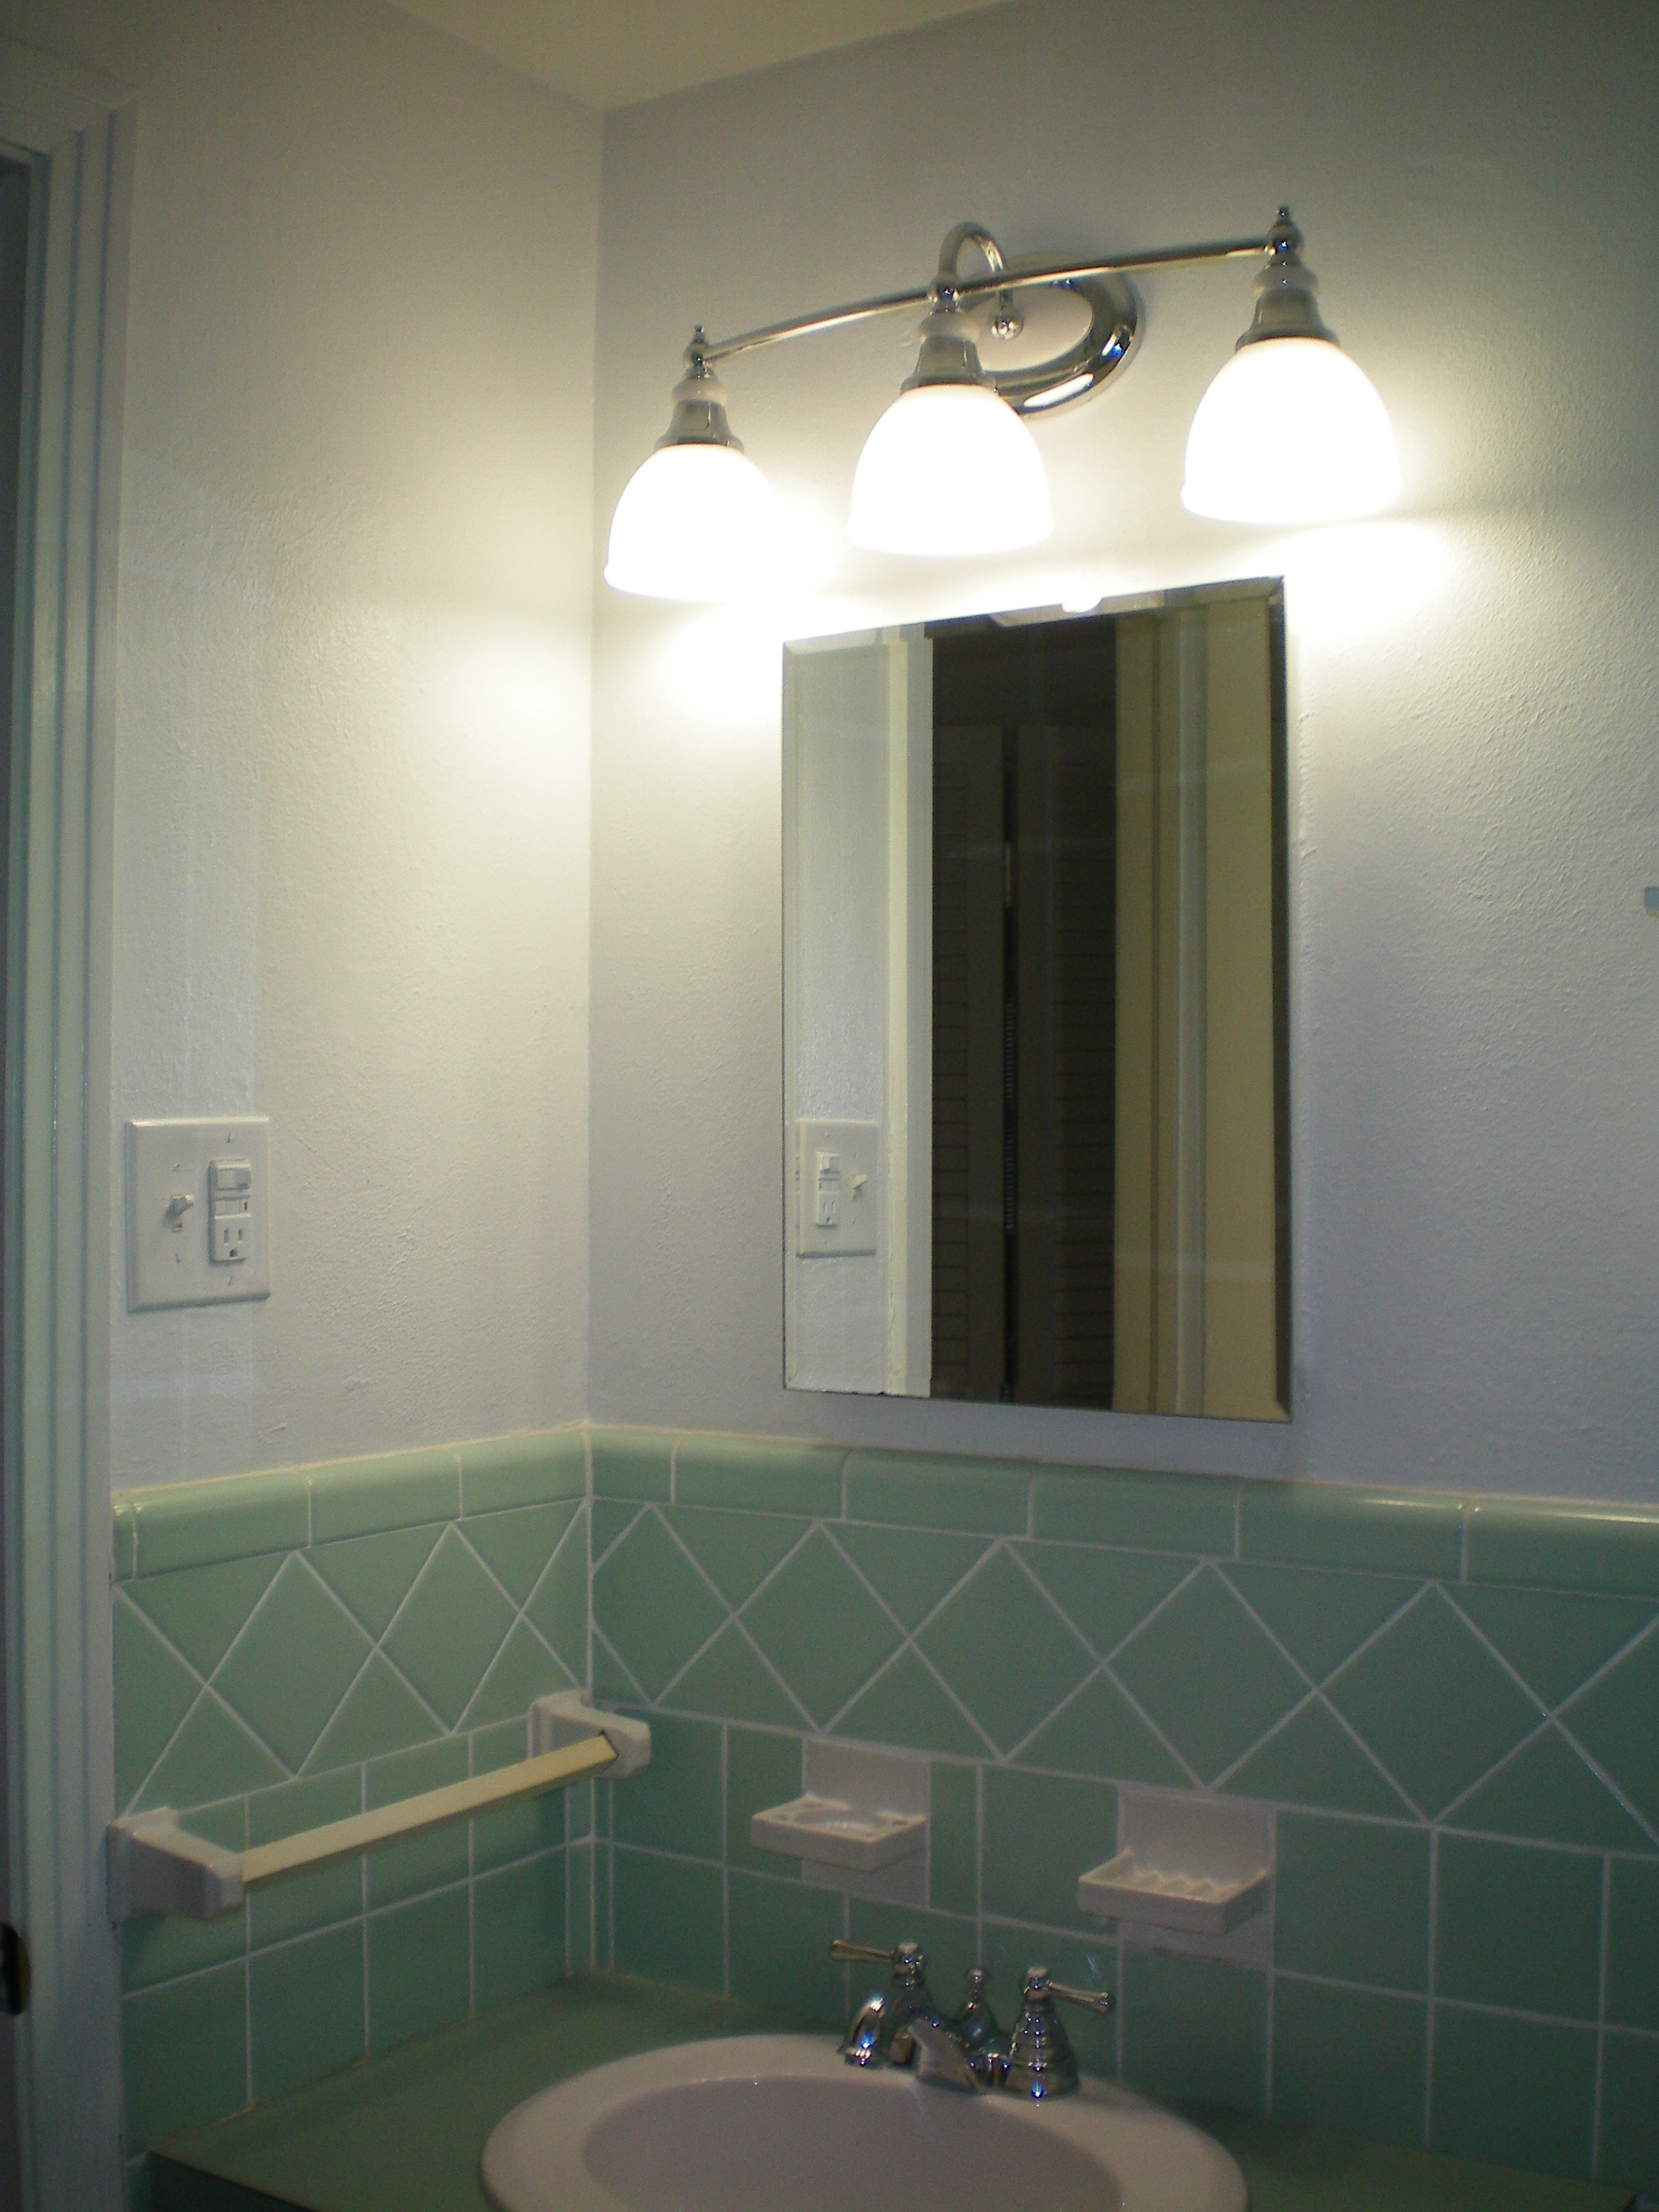 Easy Bathroom Upgrade Update Your Vanity Lighting